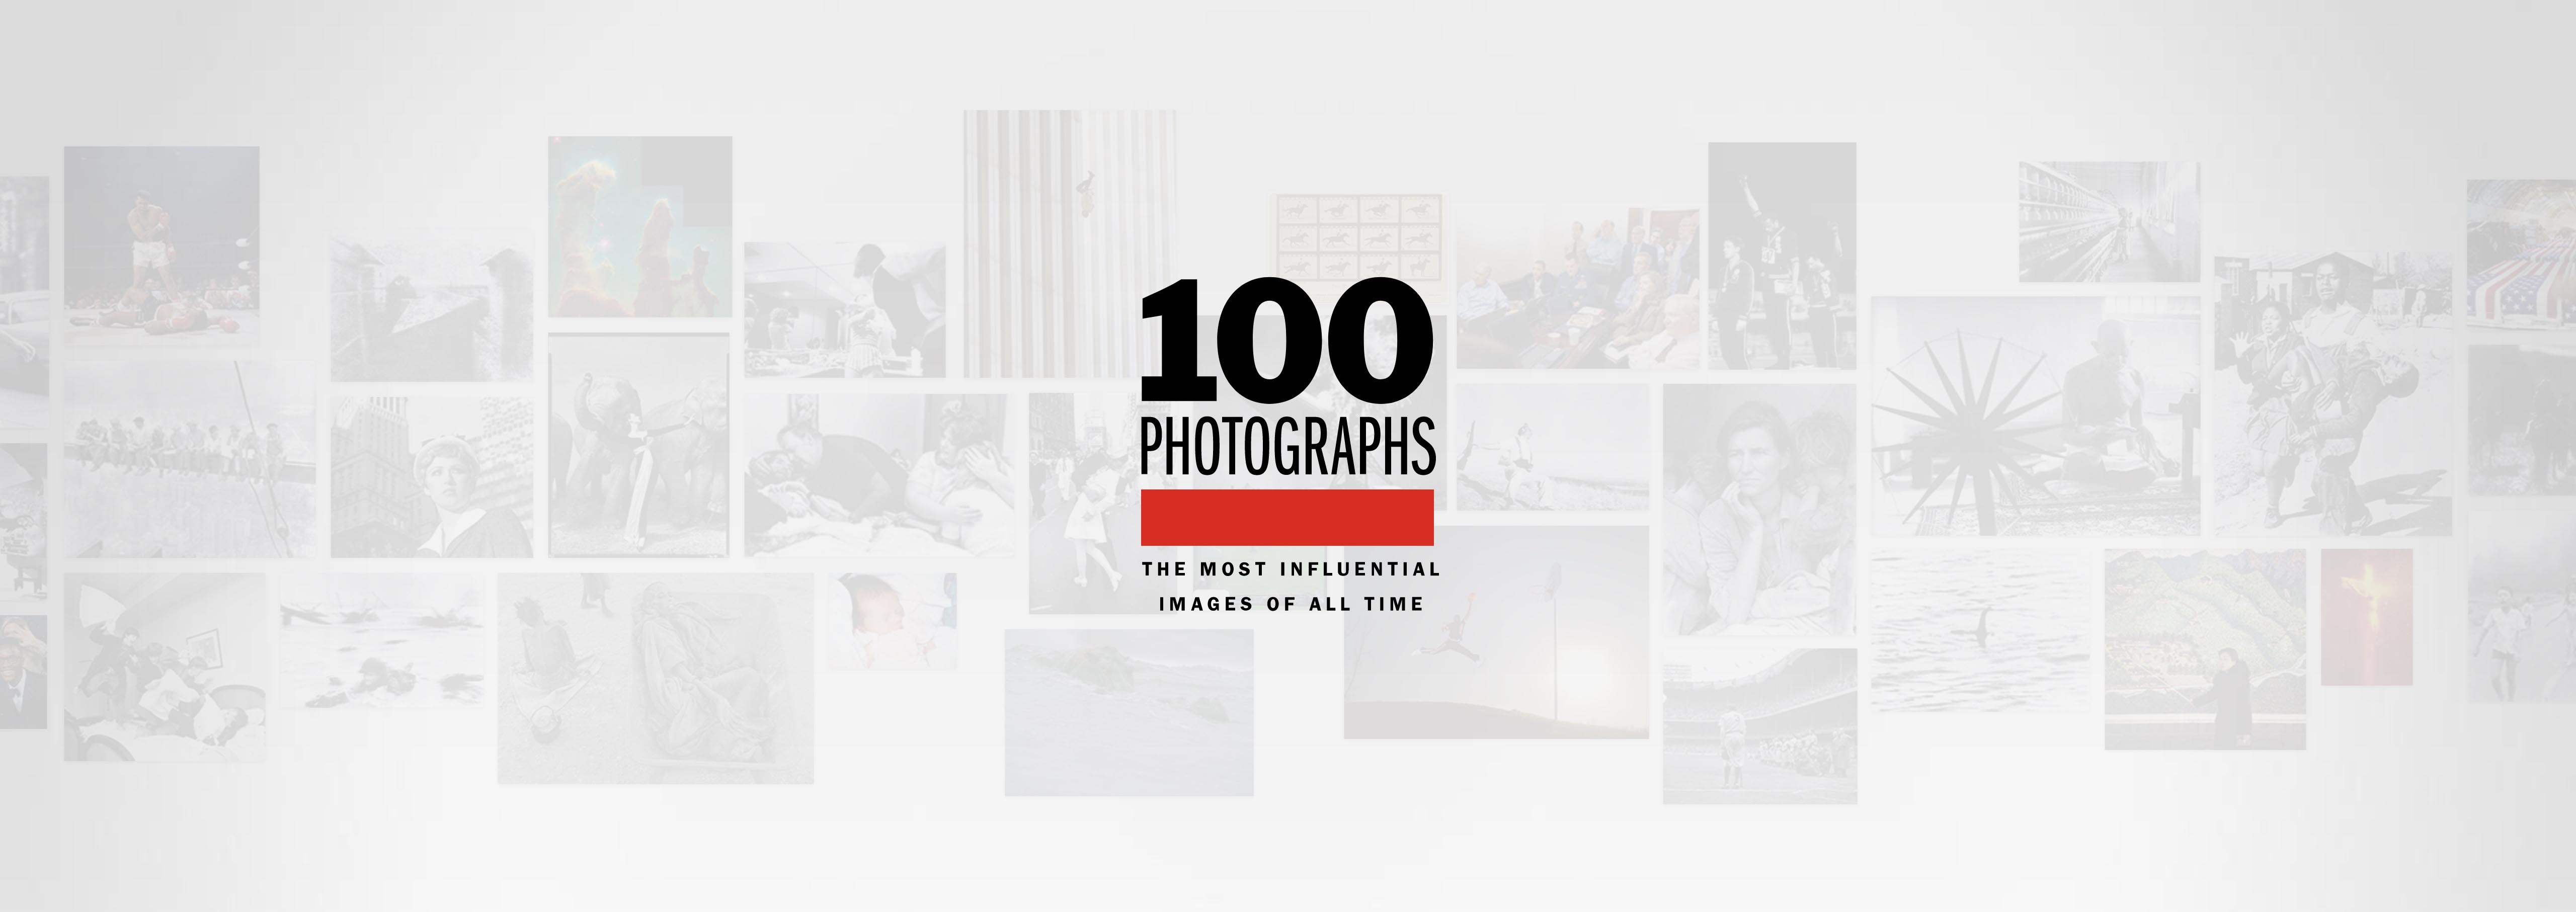 ۱۰۰ عکس تاثیرگذار مجله تایم